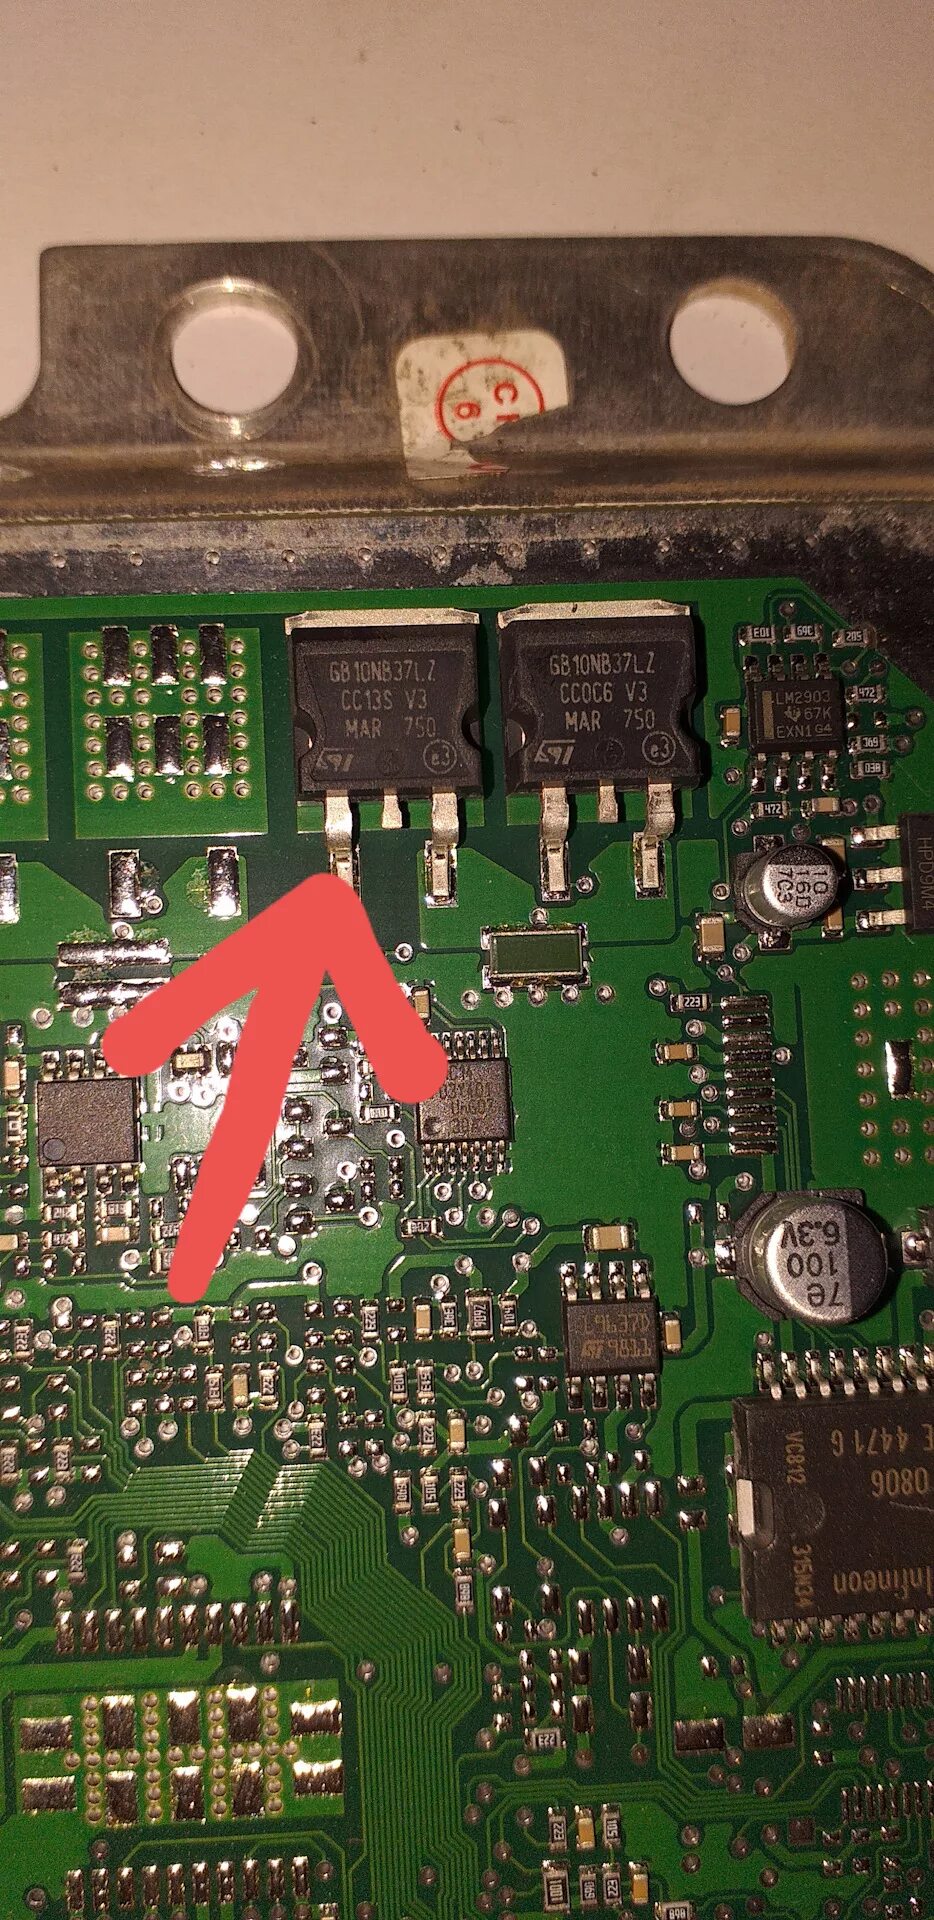 Сгорели ключи. ЭБУ ВАЗ 2114 перегорел. Транзистор сгорел ЭБУ январь 7.2. Ключ ЭБУ январь 7.2. Ключ 4 цилиндра январь 7.2.